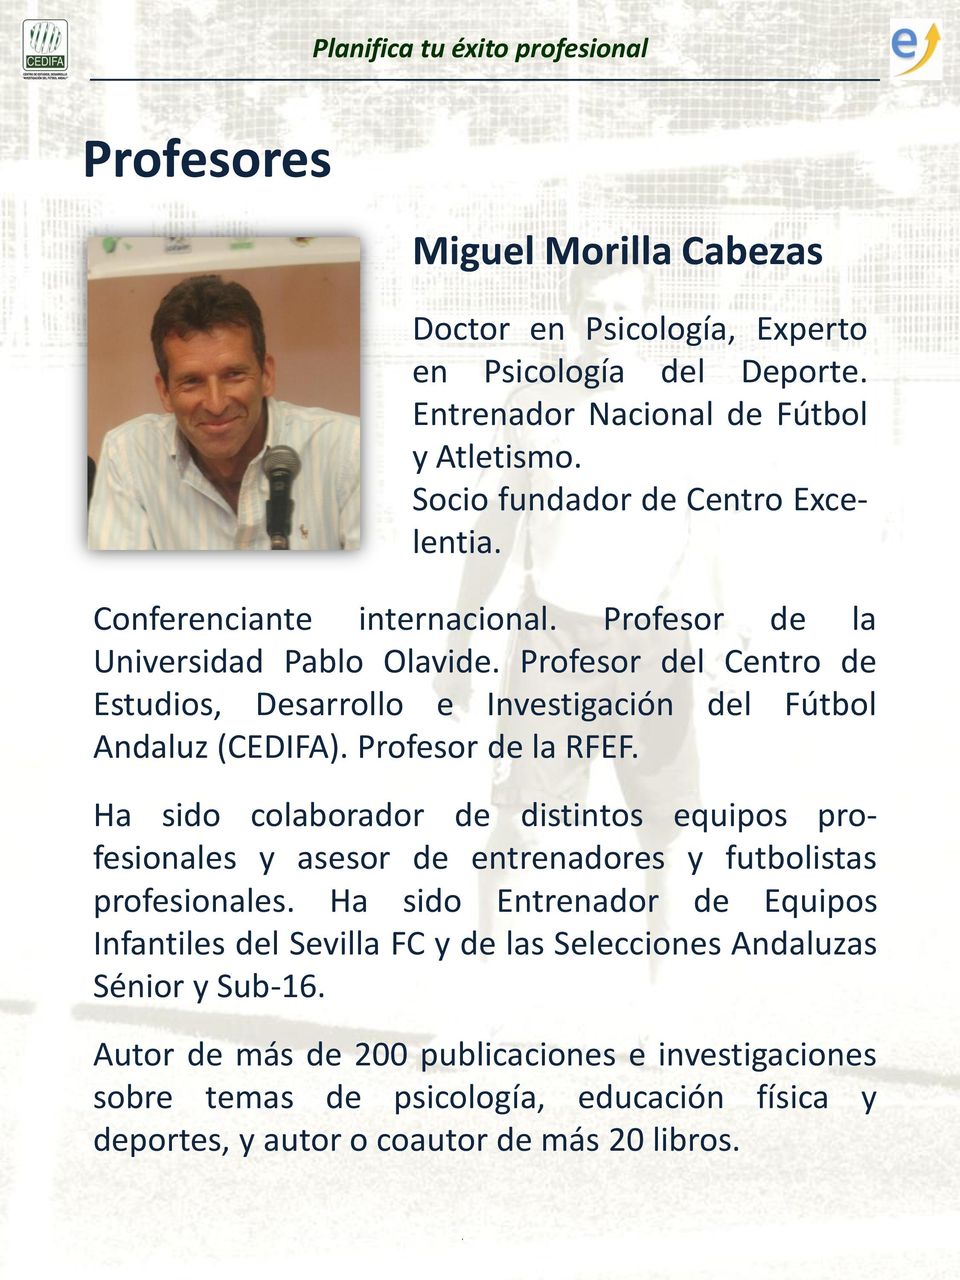 Profesor del Centro de Estudios, Desarrollo e Investigación del Fútbol Andaluz (CEDIFA). Profesor de la RFEF.